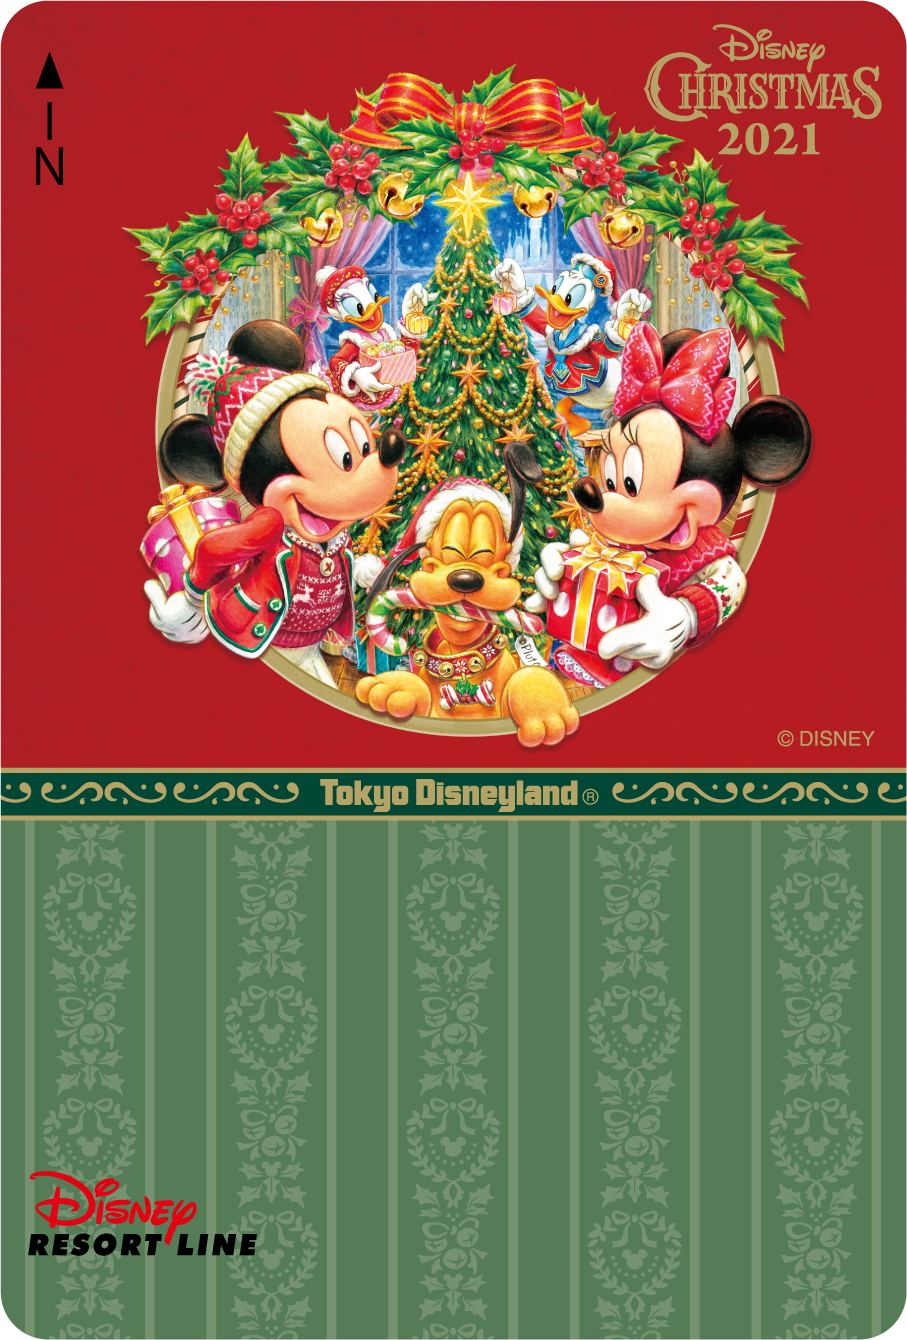 ディズニーリゾートライン フリーきっぷ“ディズニー・クリスマス2021”【東京ディズニーランド】